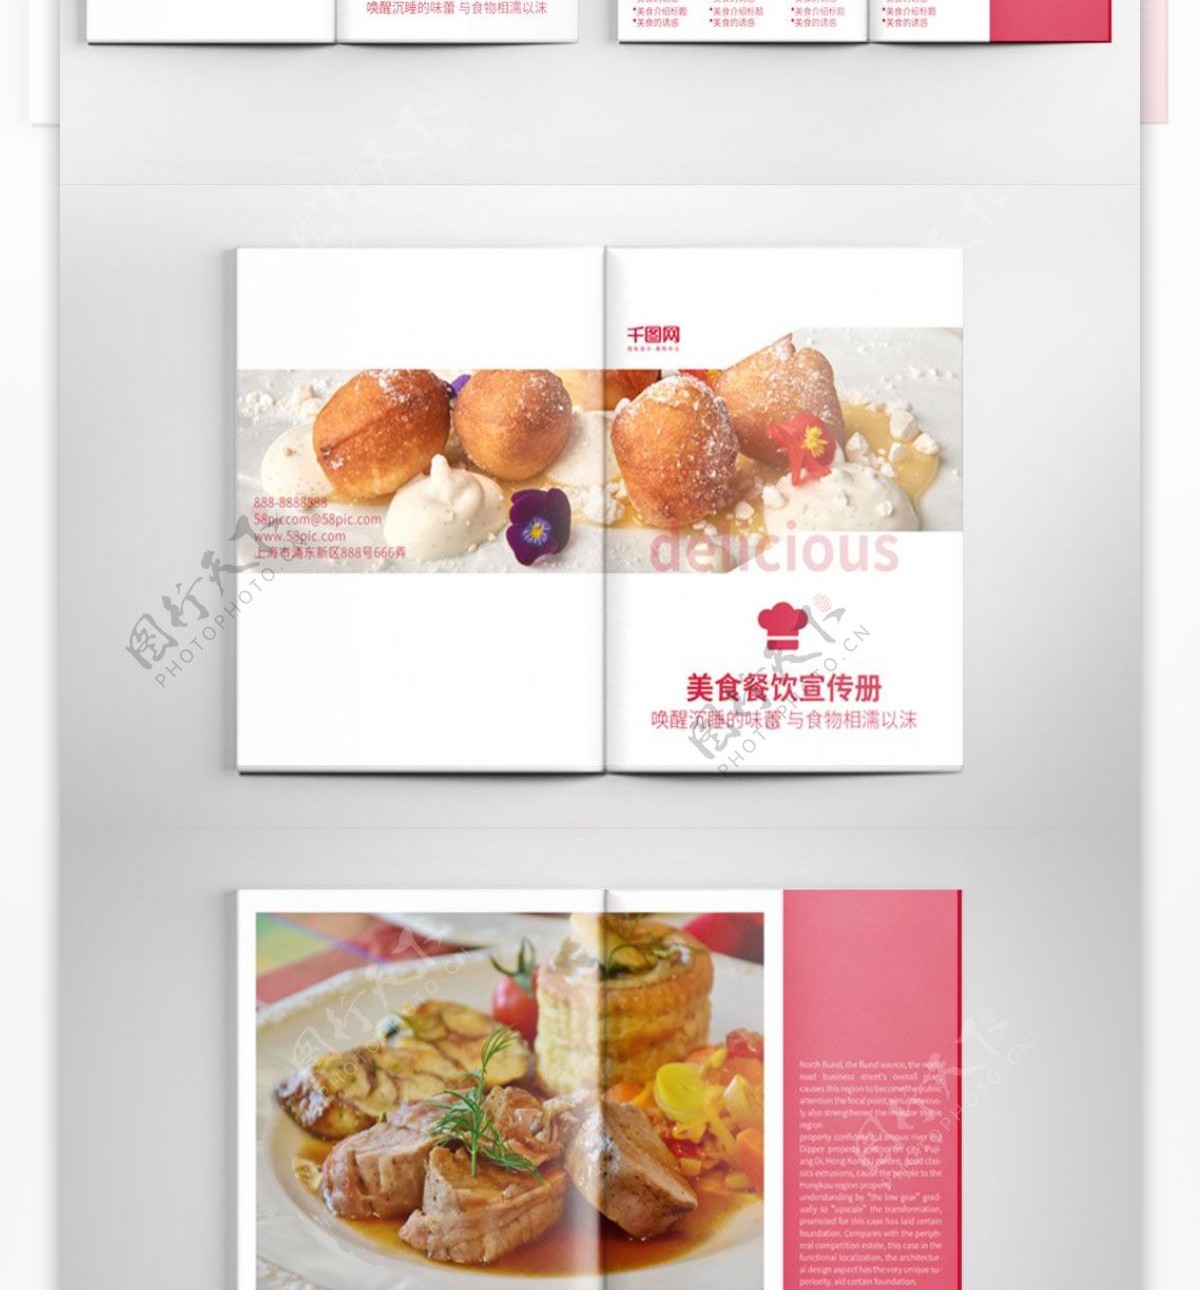 餐厅美食菜单餐饮宣传画册设计PSD模板